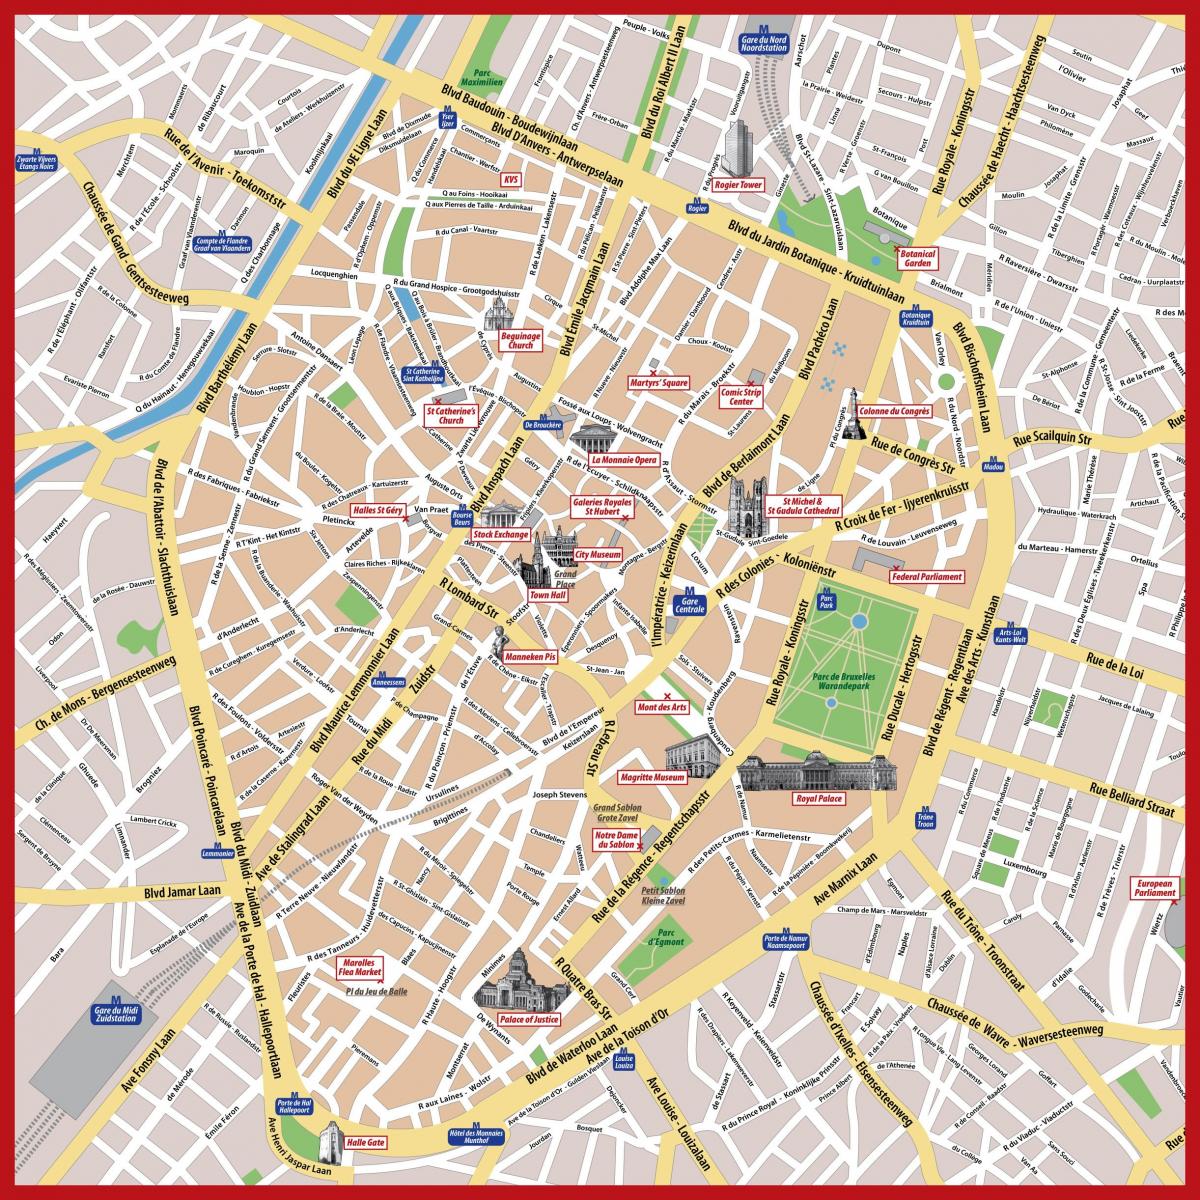 Brussels city centre map pdf - Touristische Karte von Brüssel city